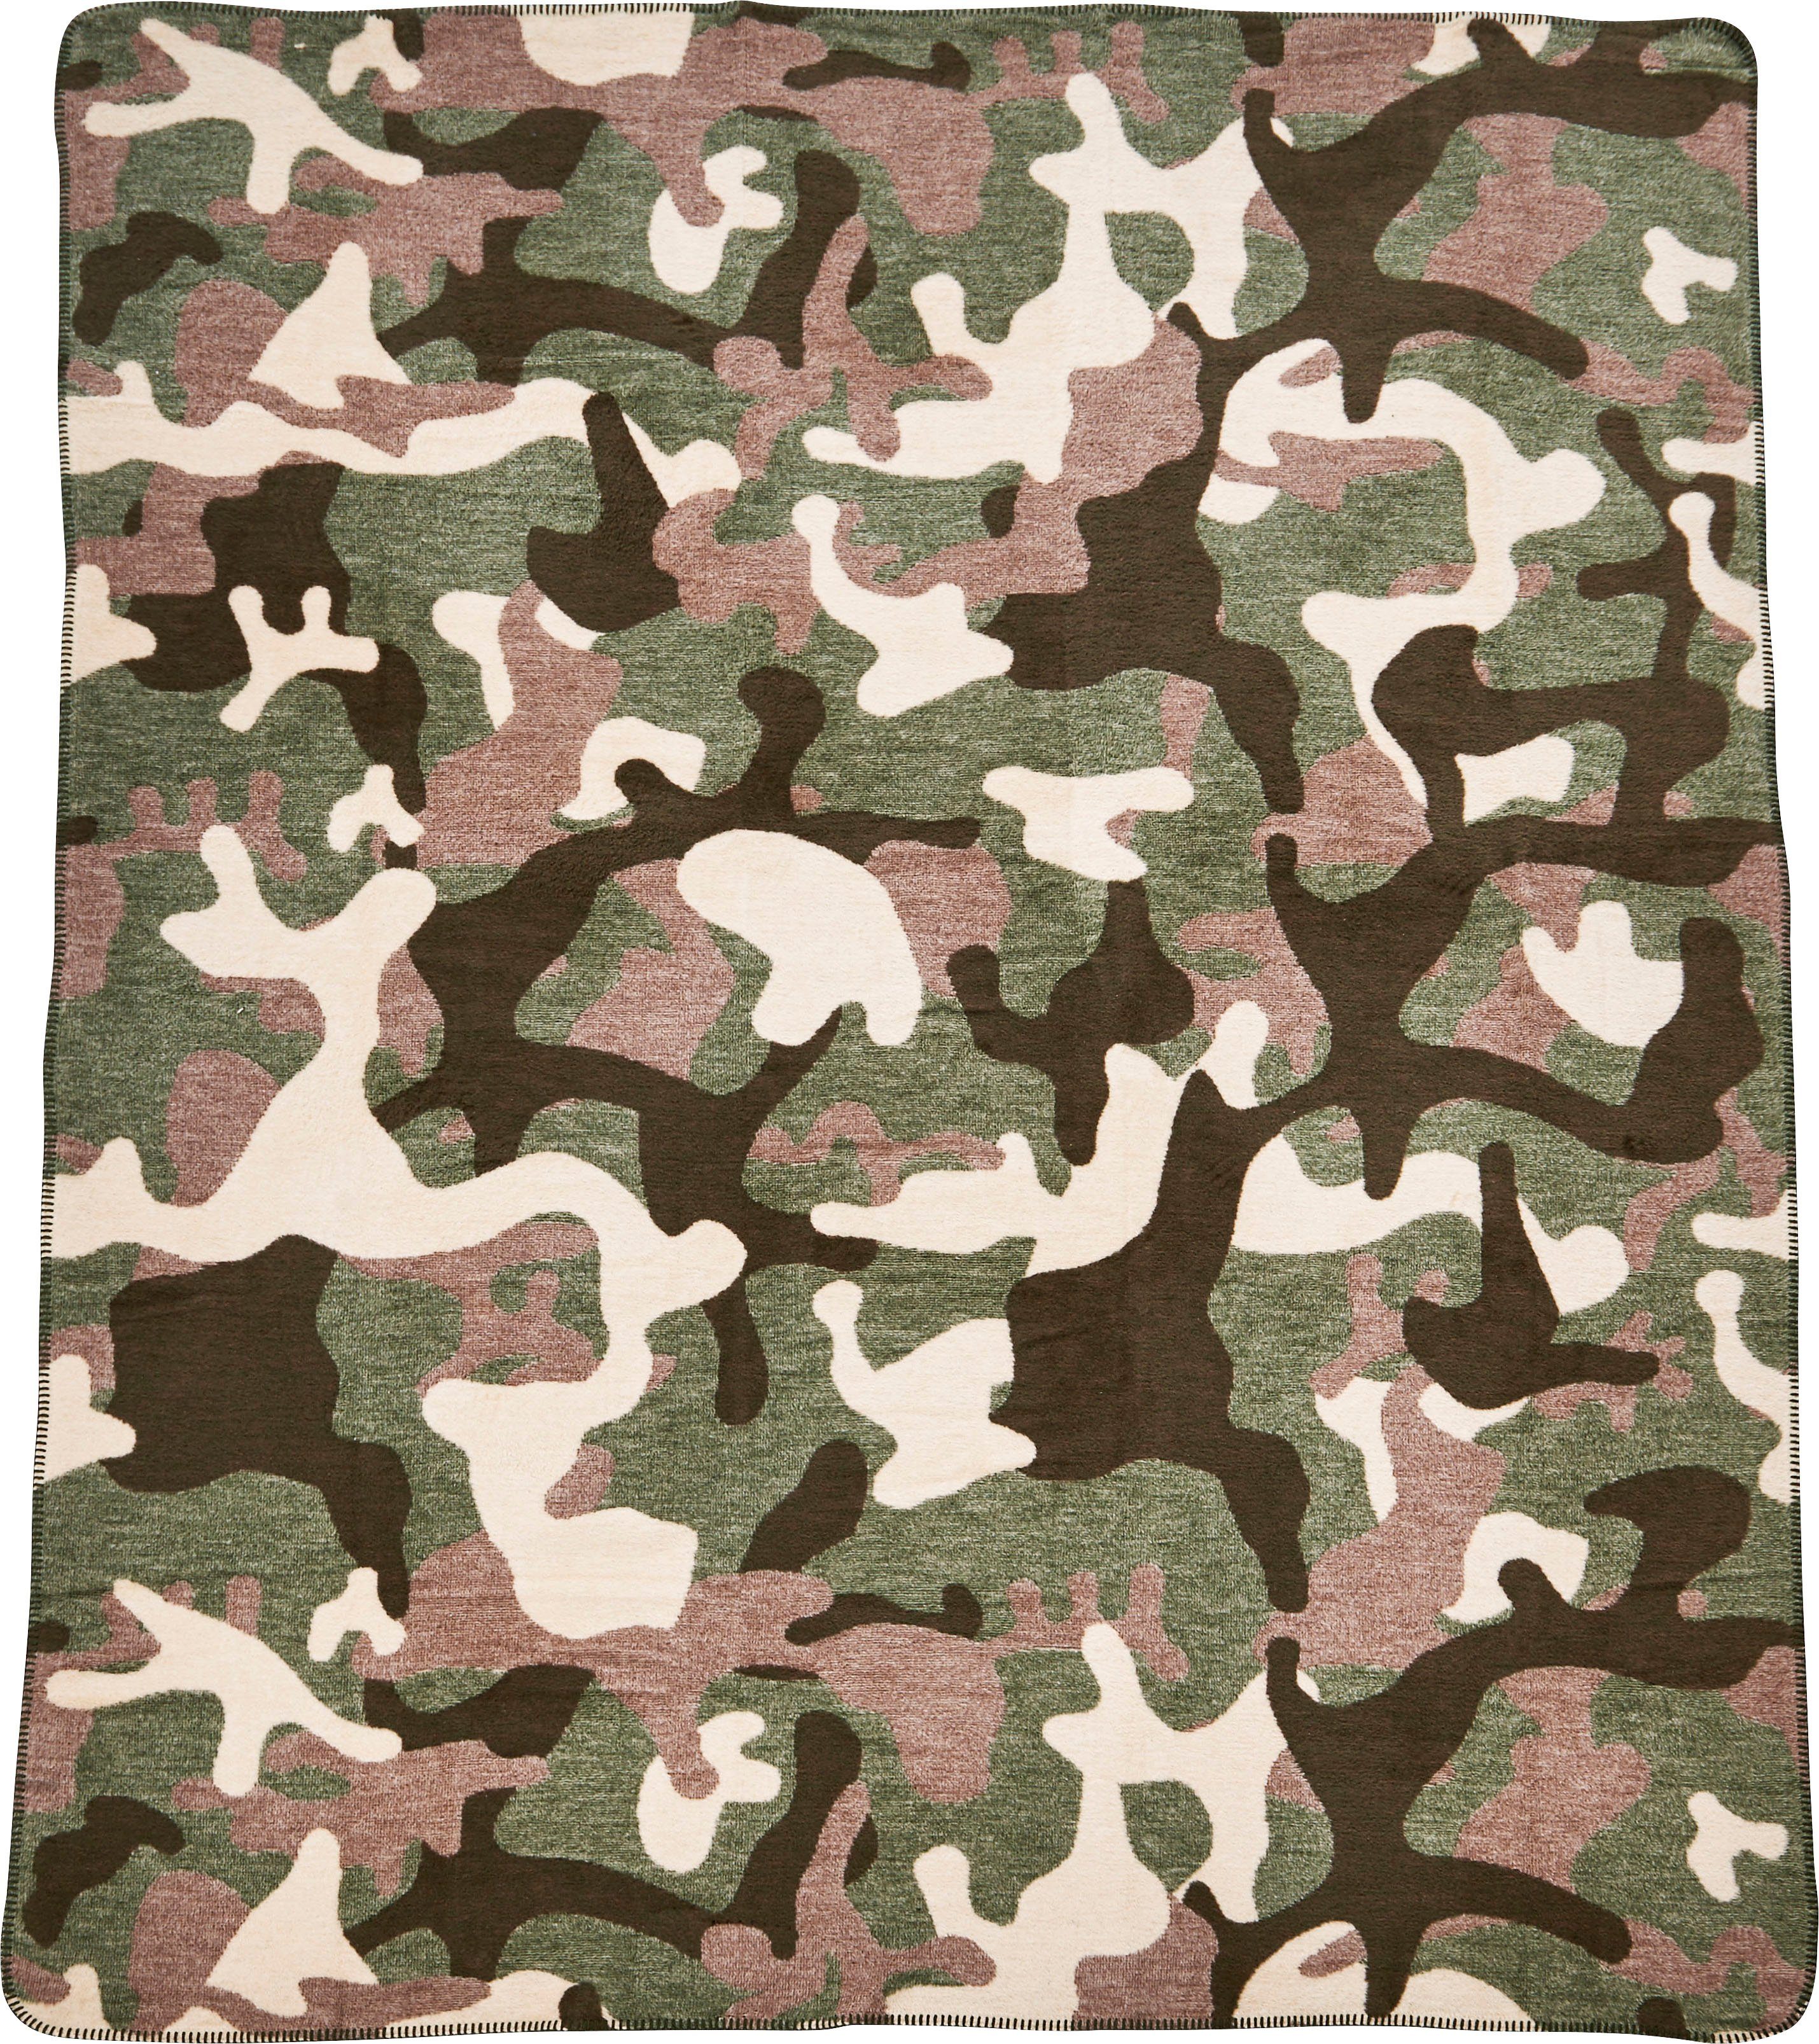 Wohndecke Camouflage, mit done.®, braun/grün/beige Kuscheldecke einfassender Ziernaht, Wohndecke